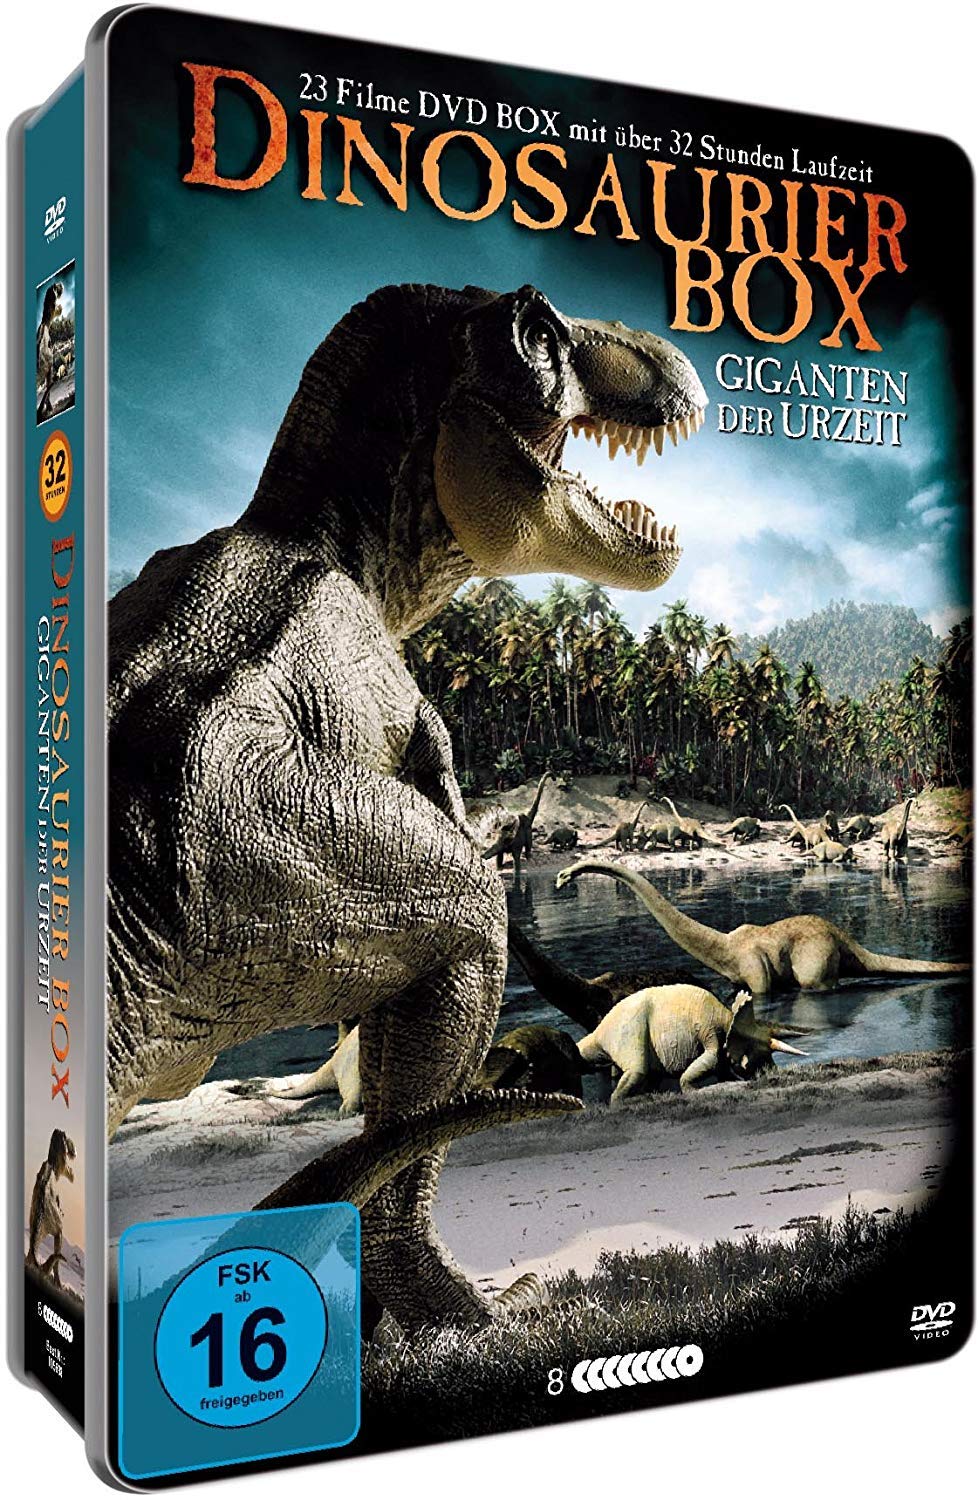 Dinosaurier Box - Giganten der Urzeit - 23 Filme auf 8 DVDs - Steelbox